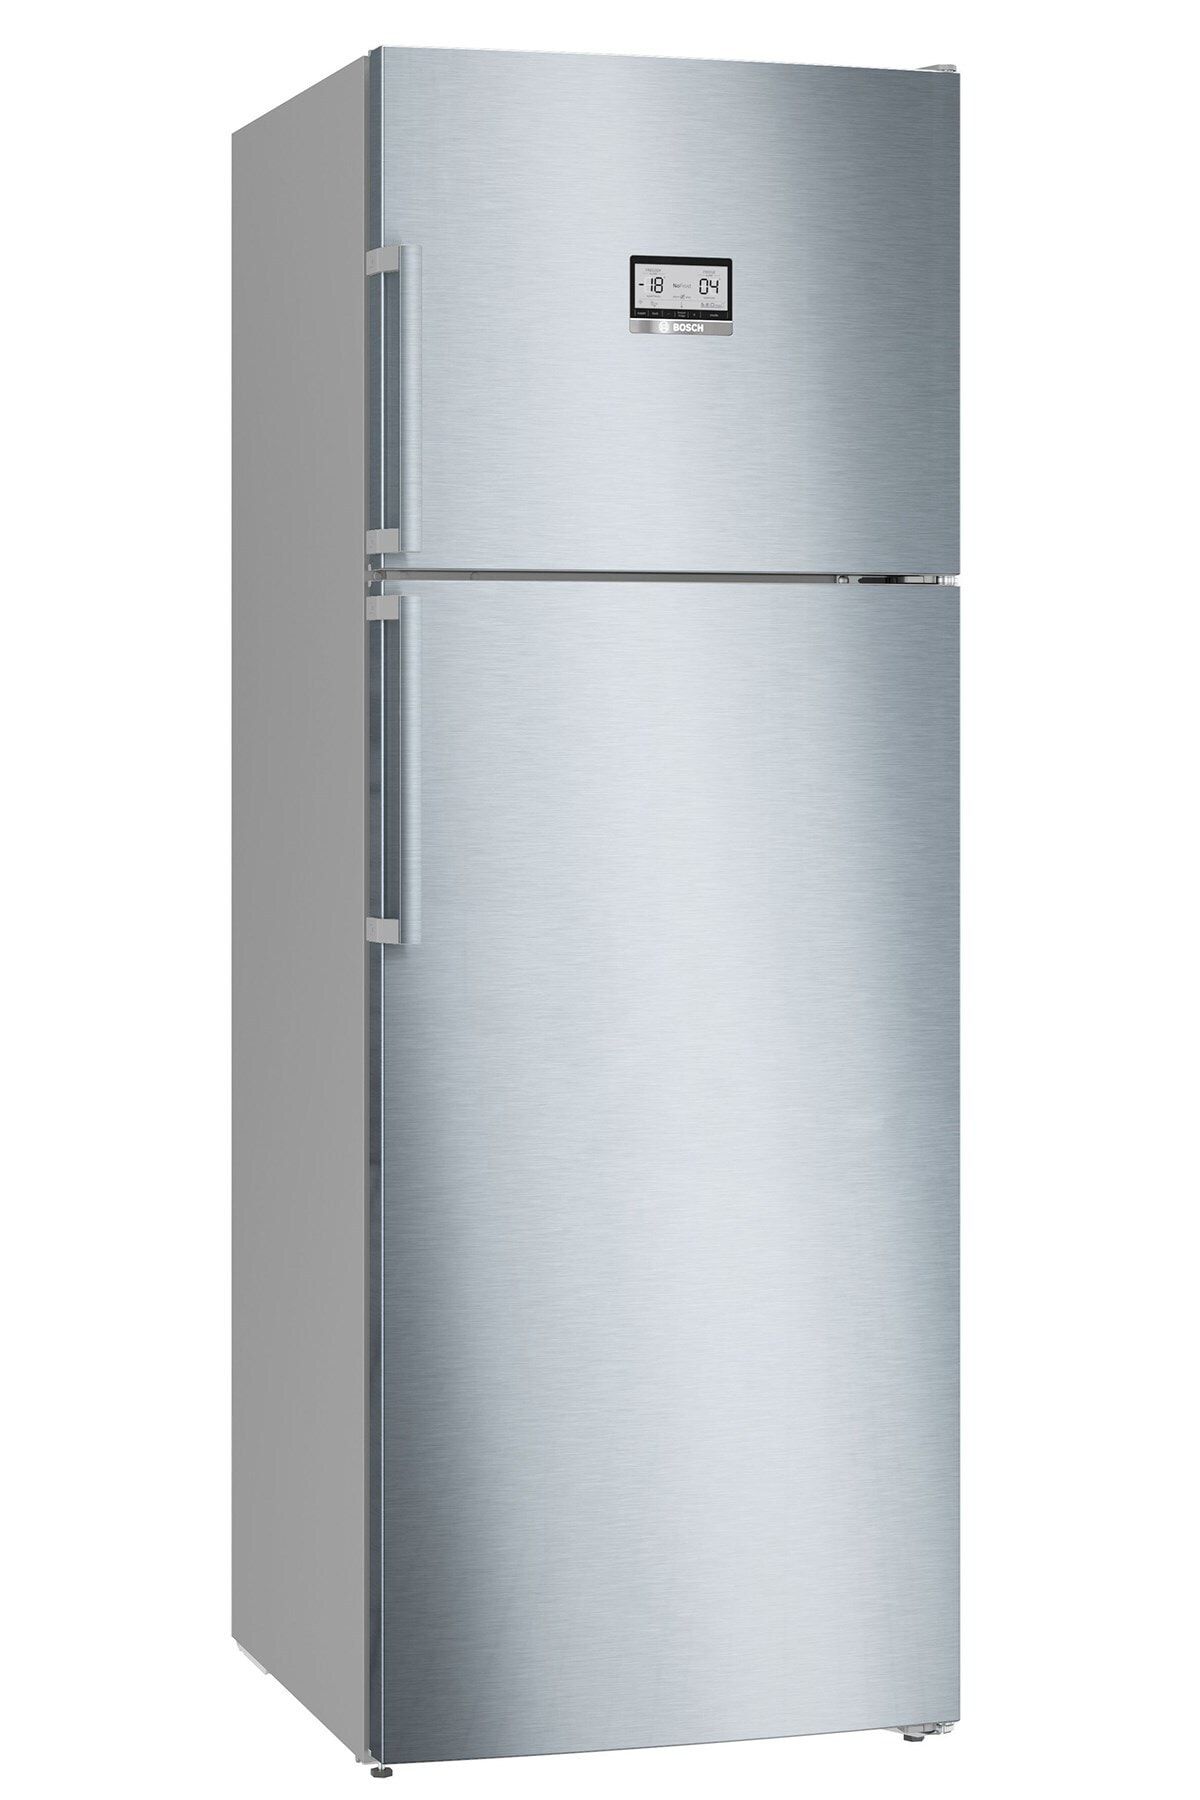 Bosch Kdn56aıe0n Çift Kapılı No- Frost Buzdolabı